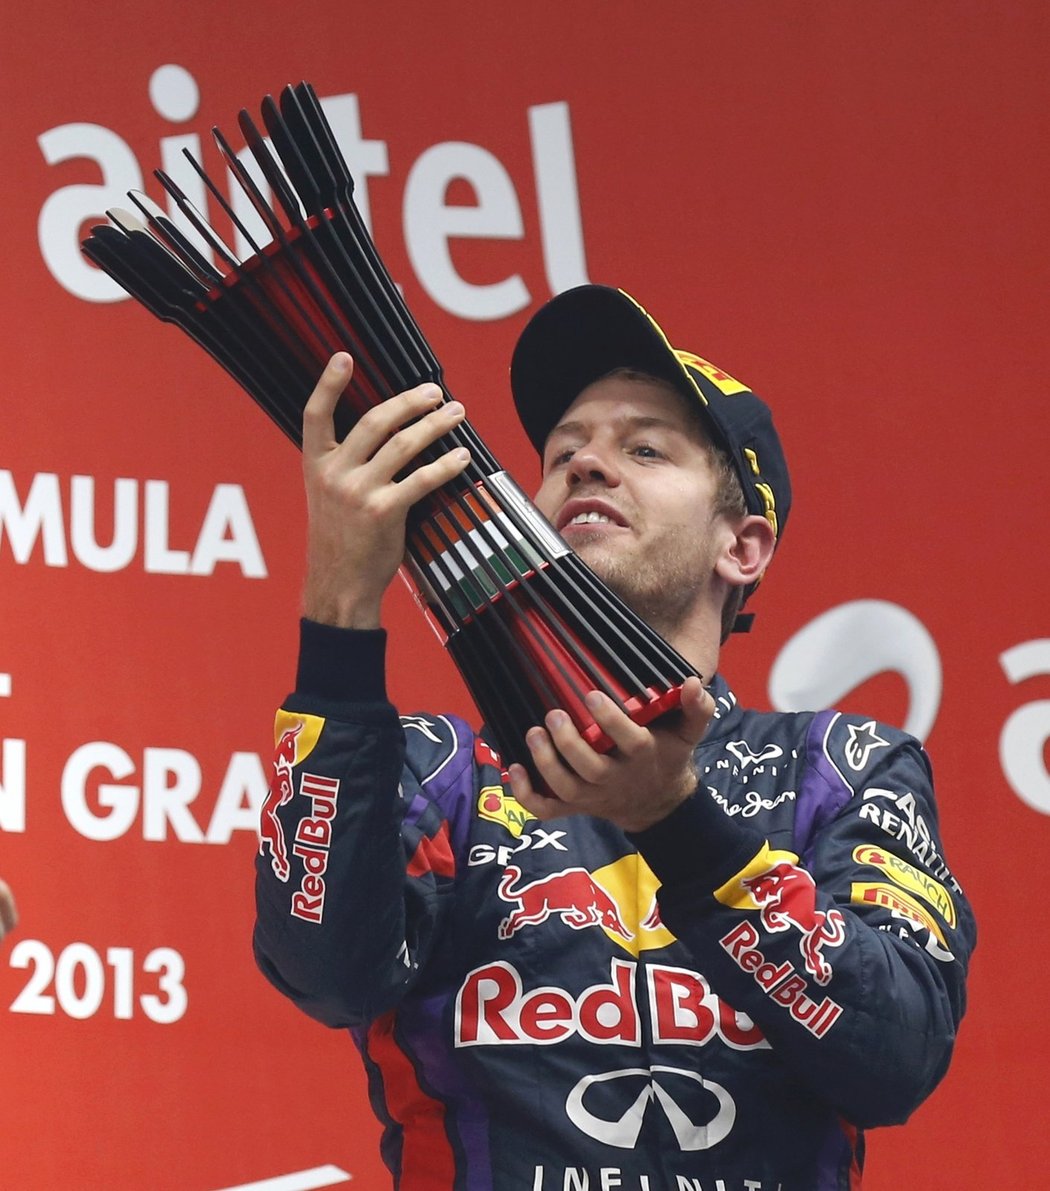 Je to tam! Sebastian Vettel vyhrál Velkou cenu Indie a jako nejmladší jezdec se stal počtvrté v kariéřeš mistrem světa v F1